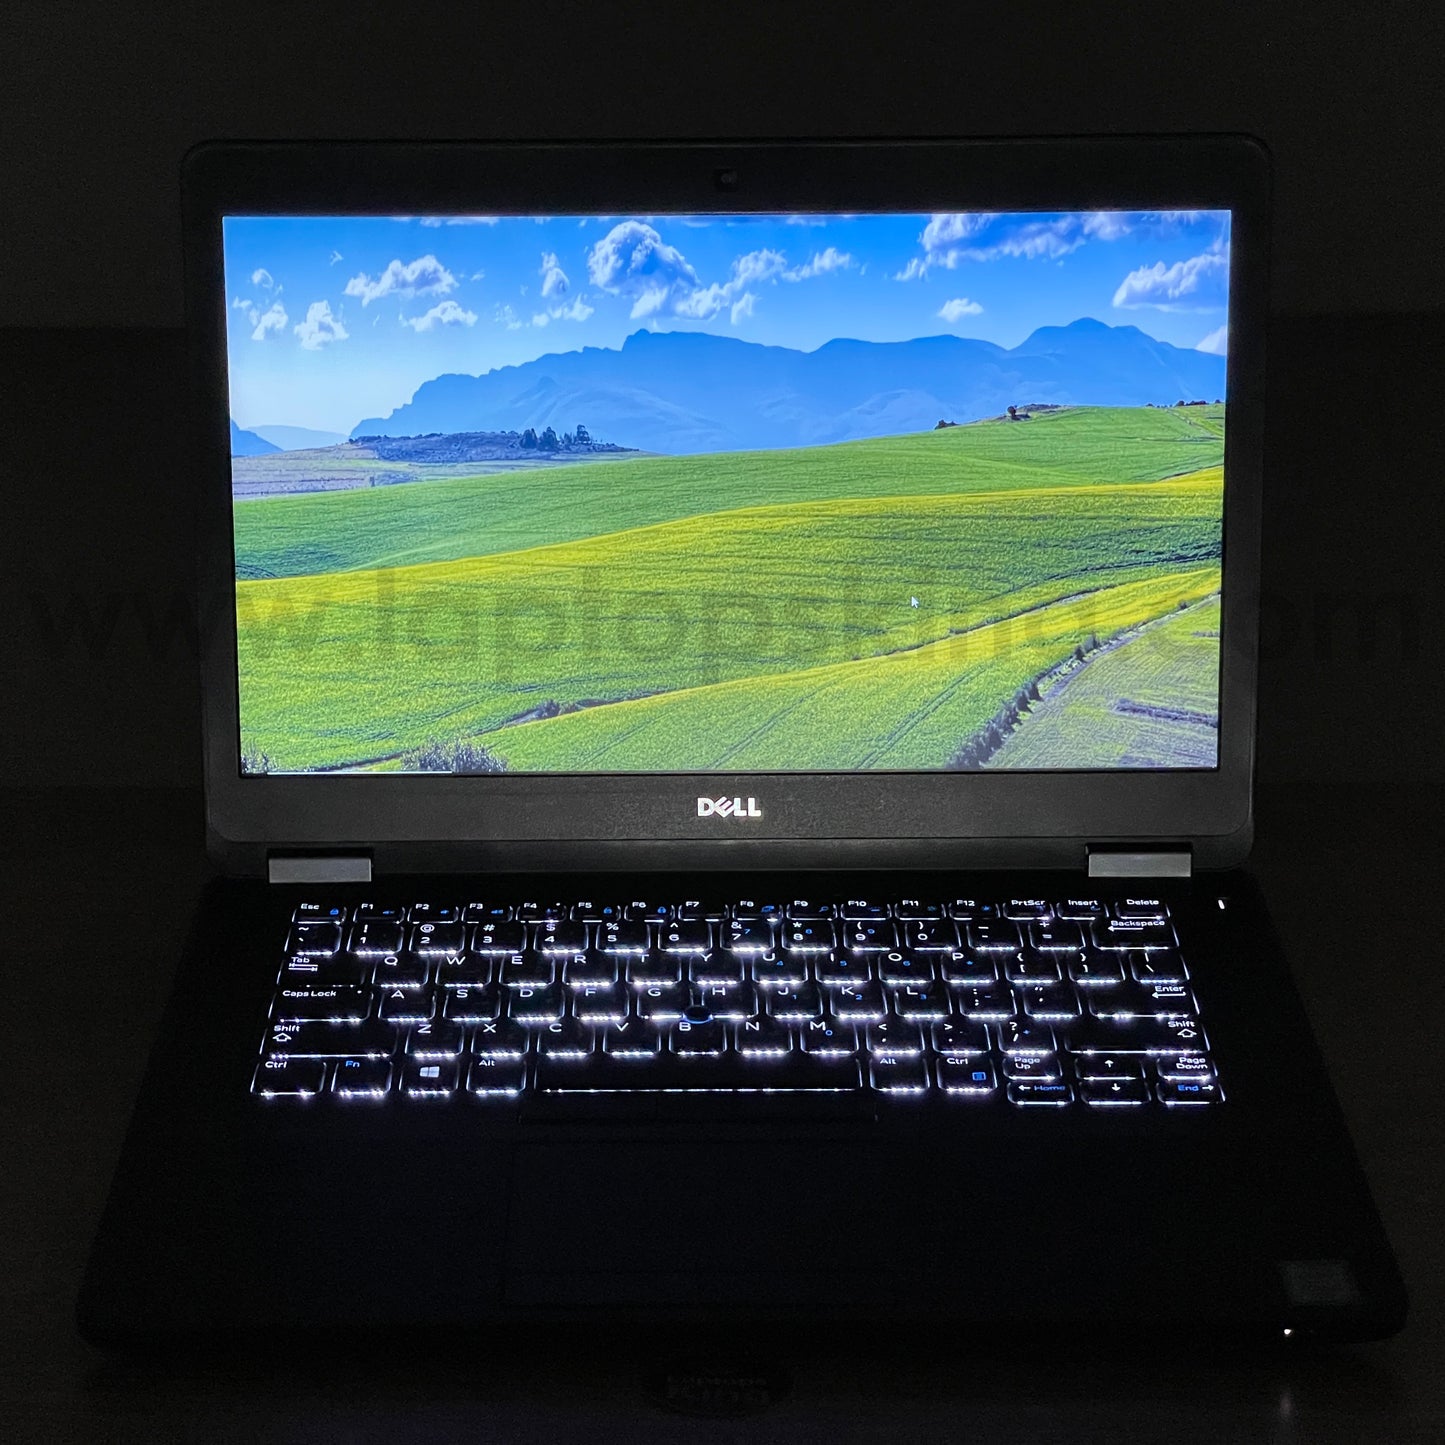 Dell Latitude E5470 Core i7 | 14" Laptop Offers (Open Box)